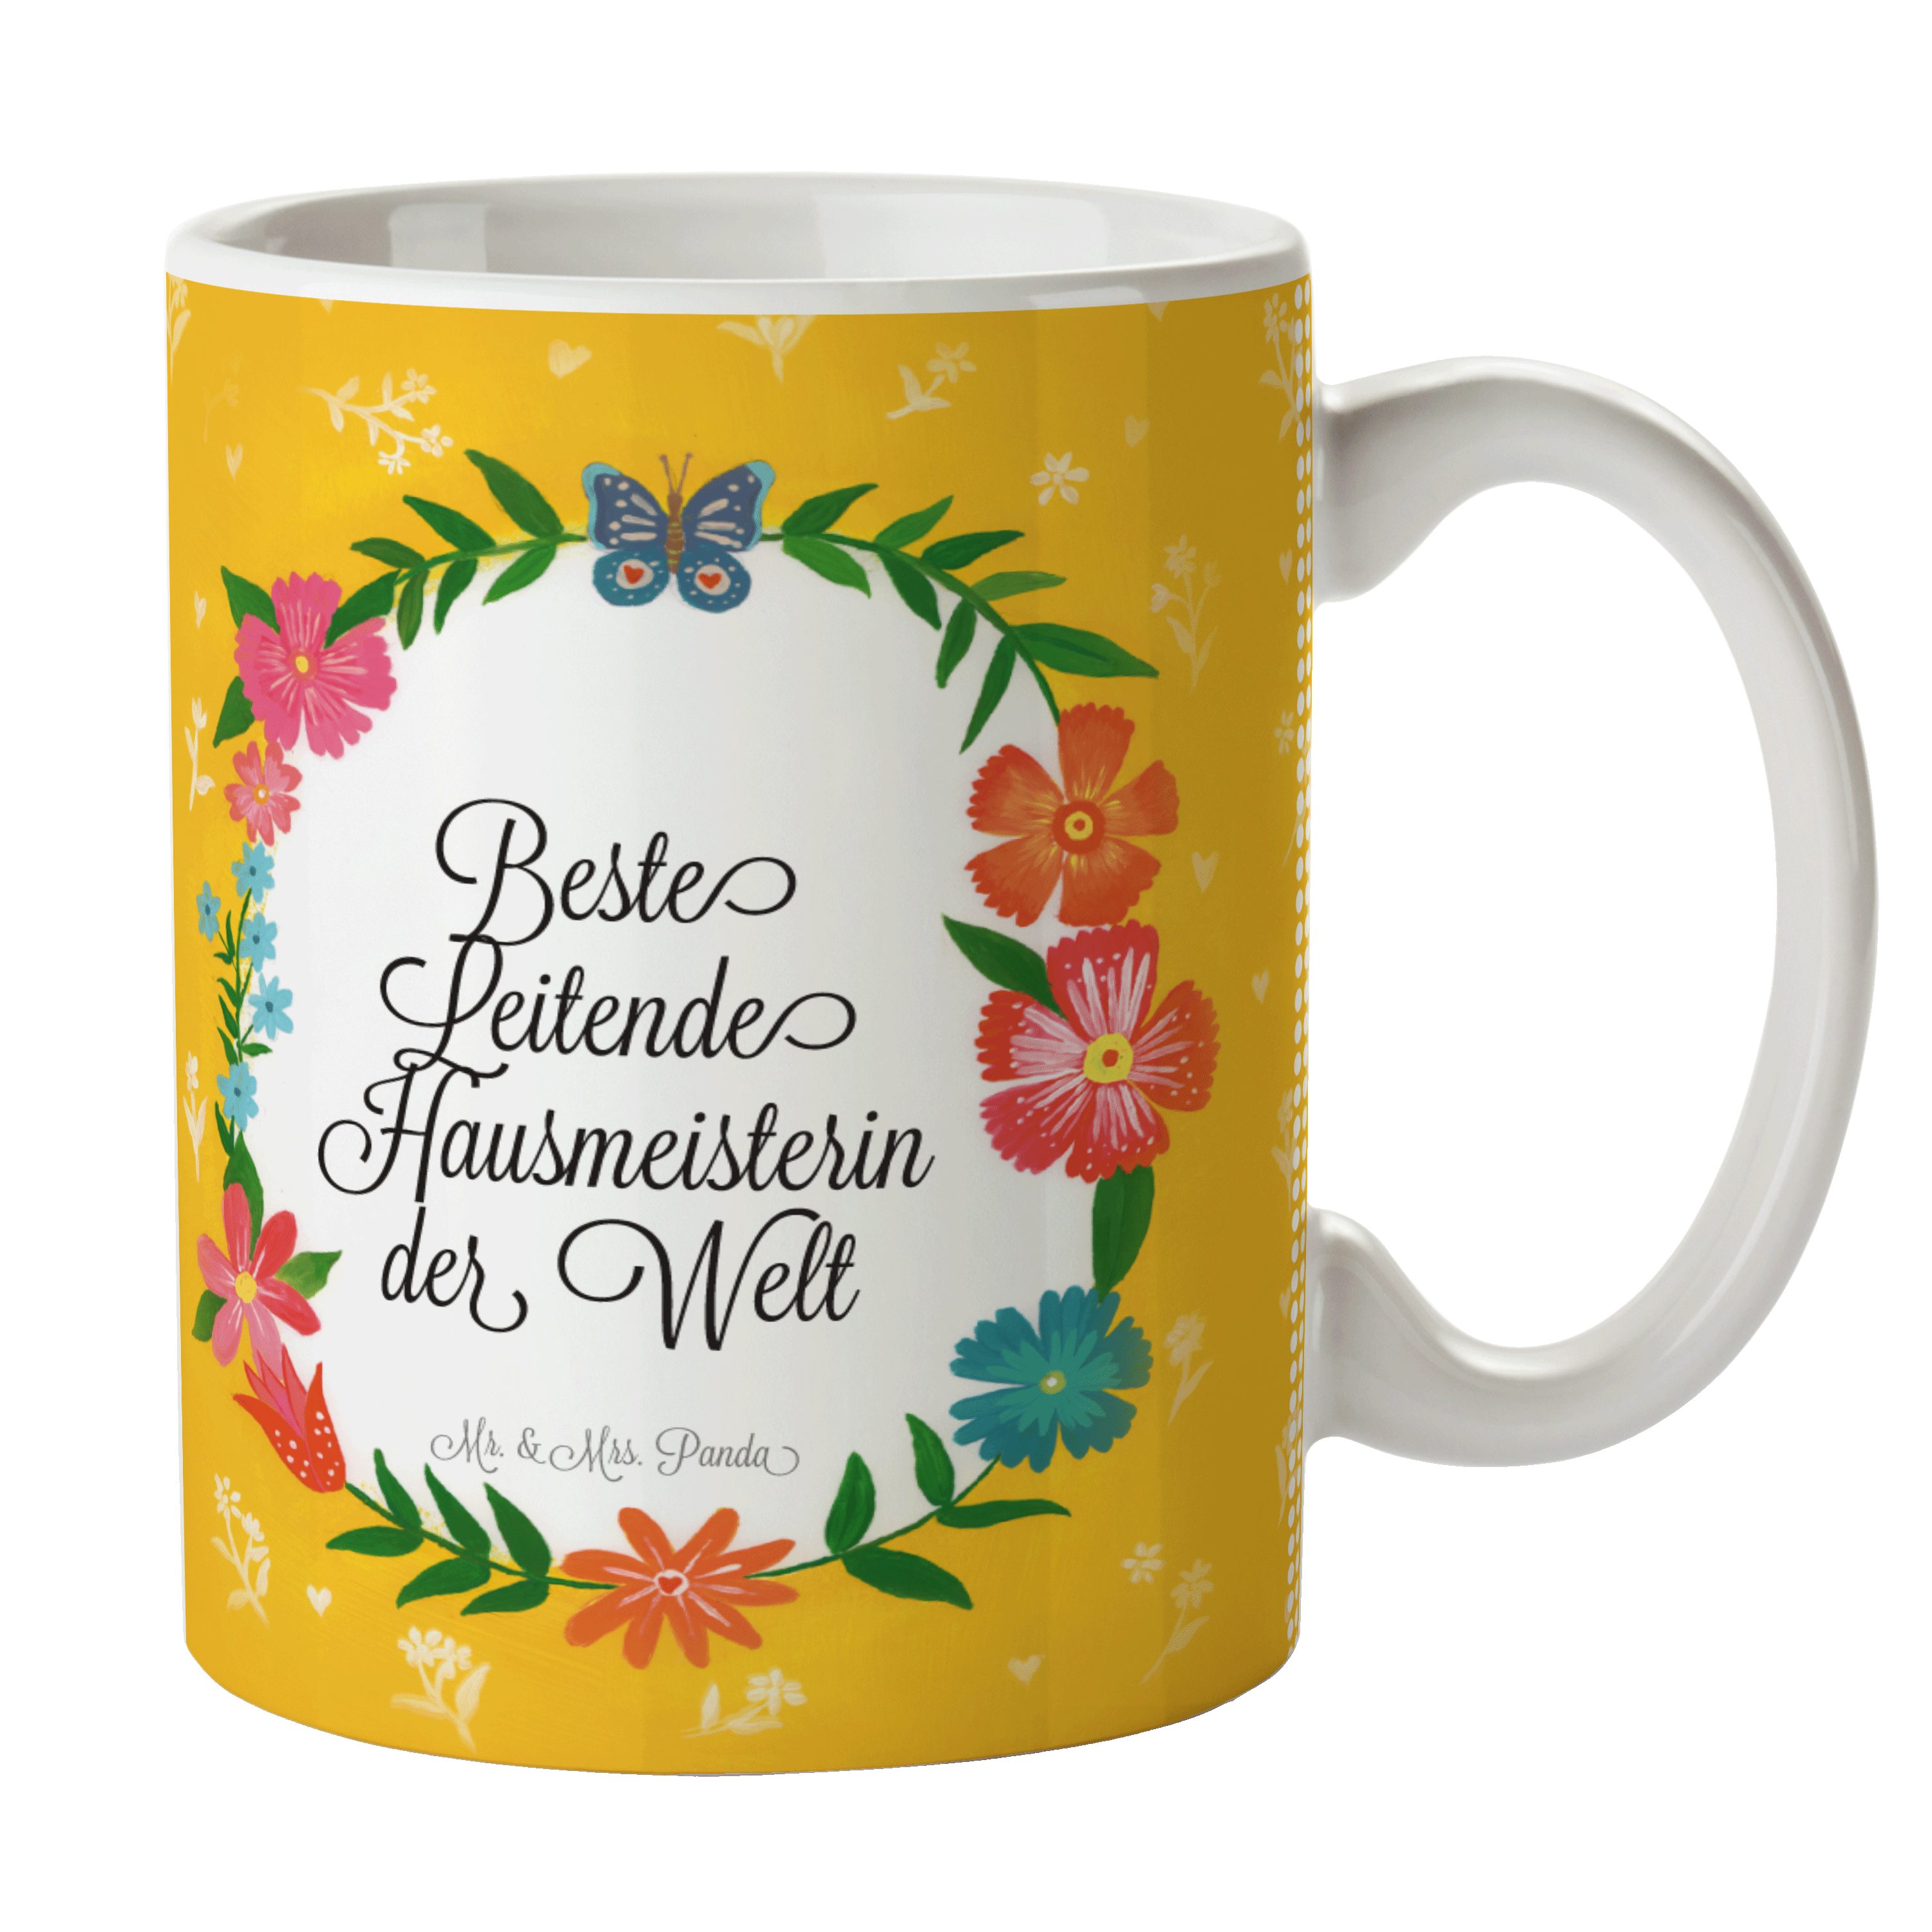 Mr. & Mrs. Abschied, Geschenk, Keramik - Tasse Sprüc, Hausmeisterin Kaffeetasse, Panda Tasse Leitende